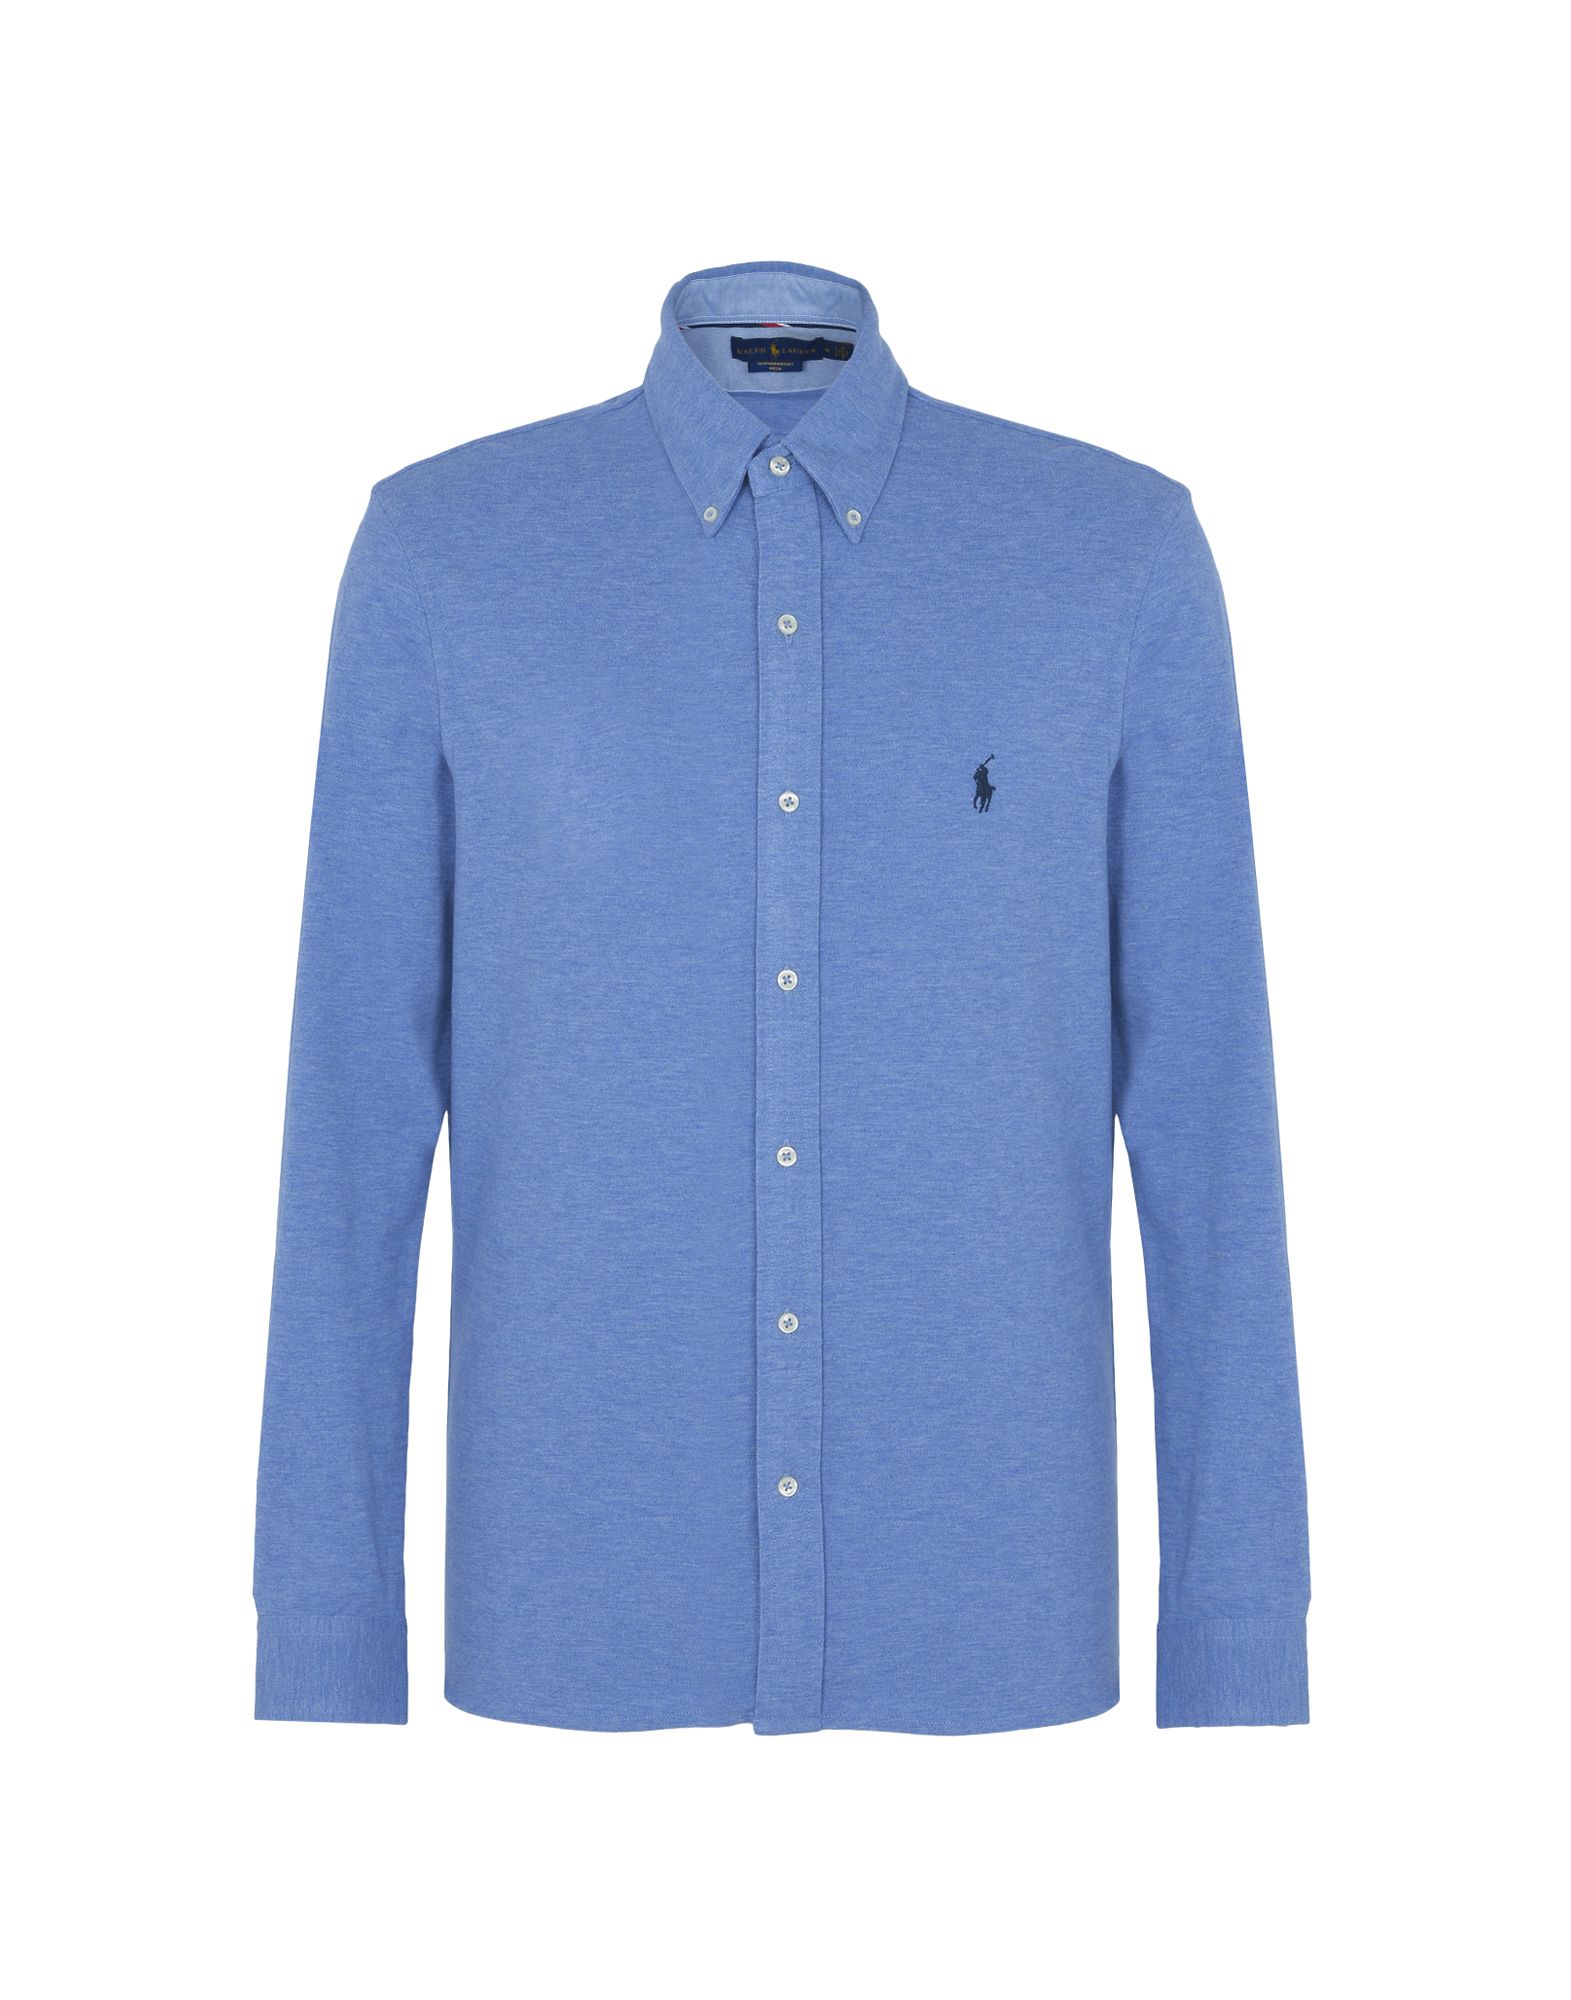 《送料無料》POLO RALPH LAUREN メンズ シャツ アジュールブルー S コットン 100% Custom Fit Knitted Shirt